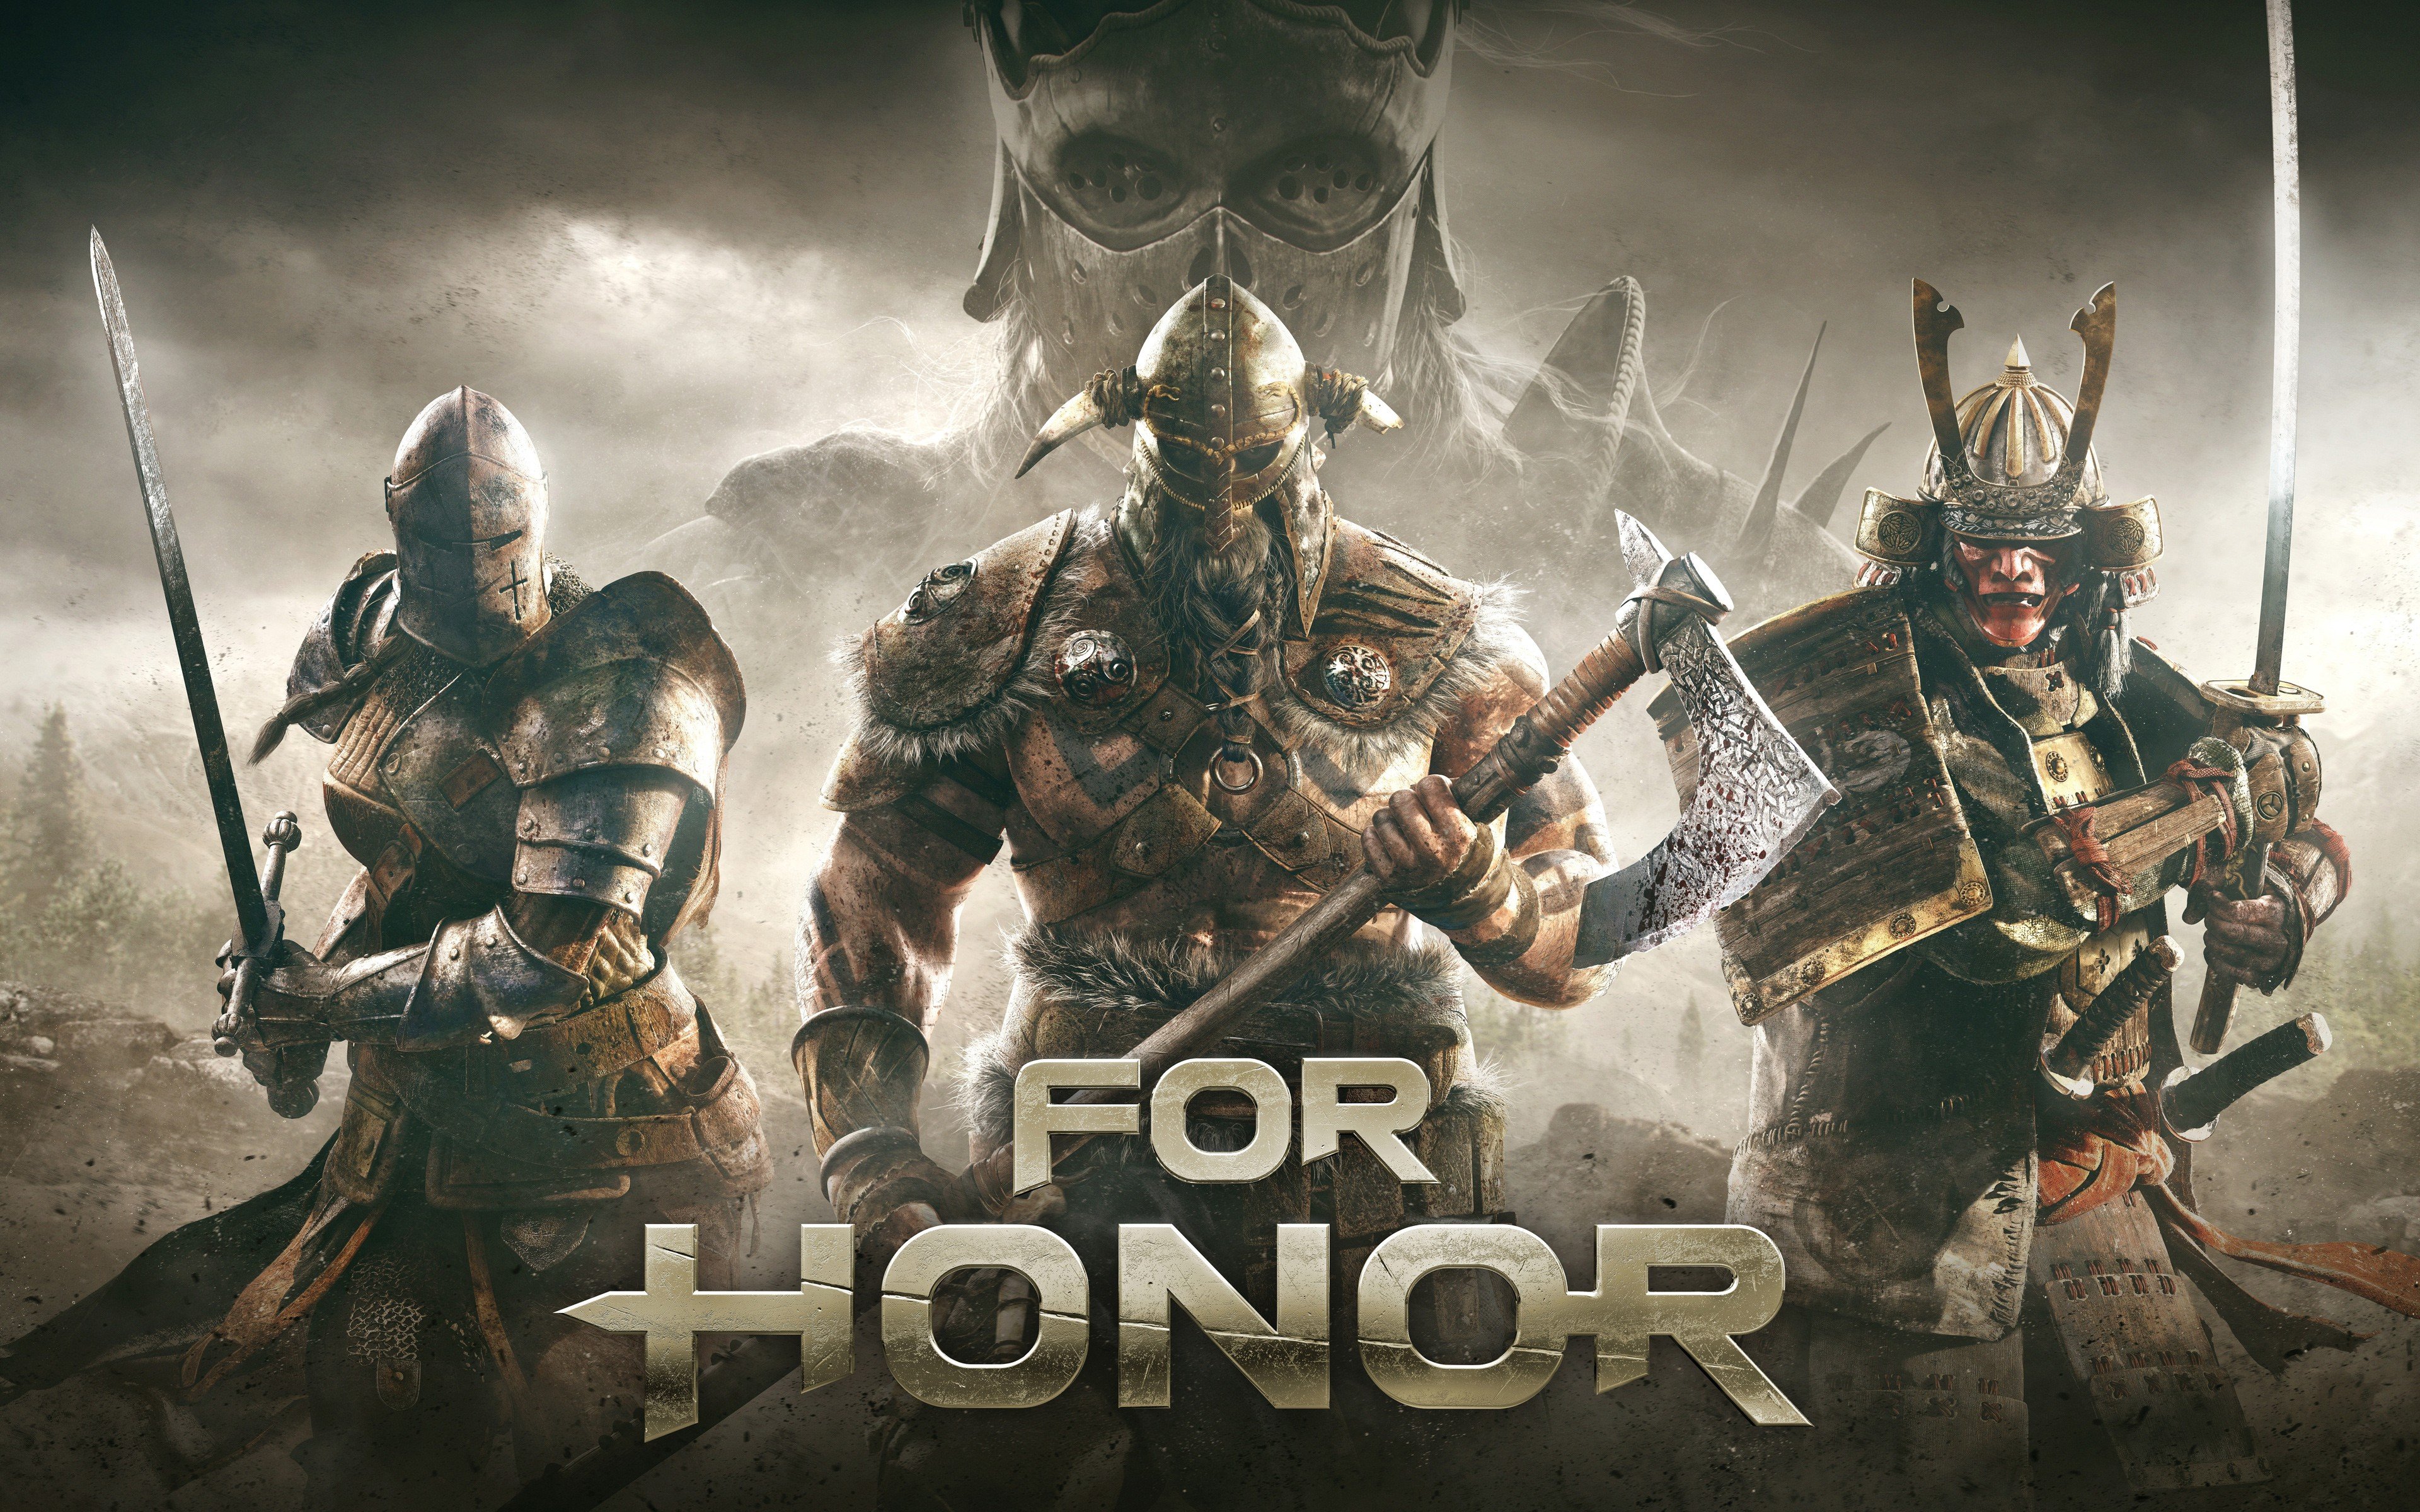 knight, For Honor, Ubisoft, Video games, Vikings, Samurai Wallpaper